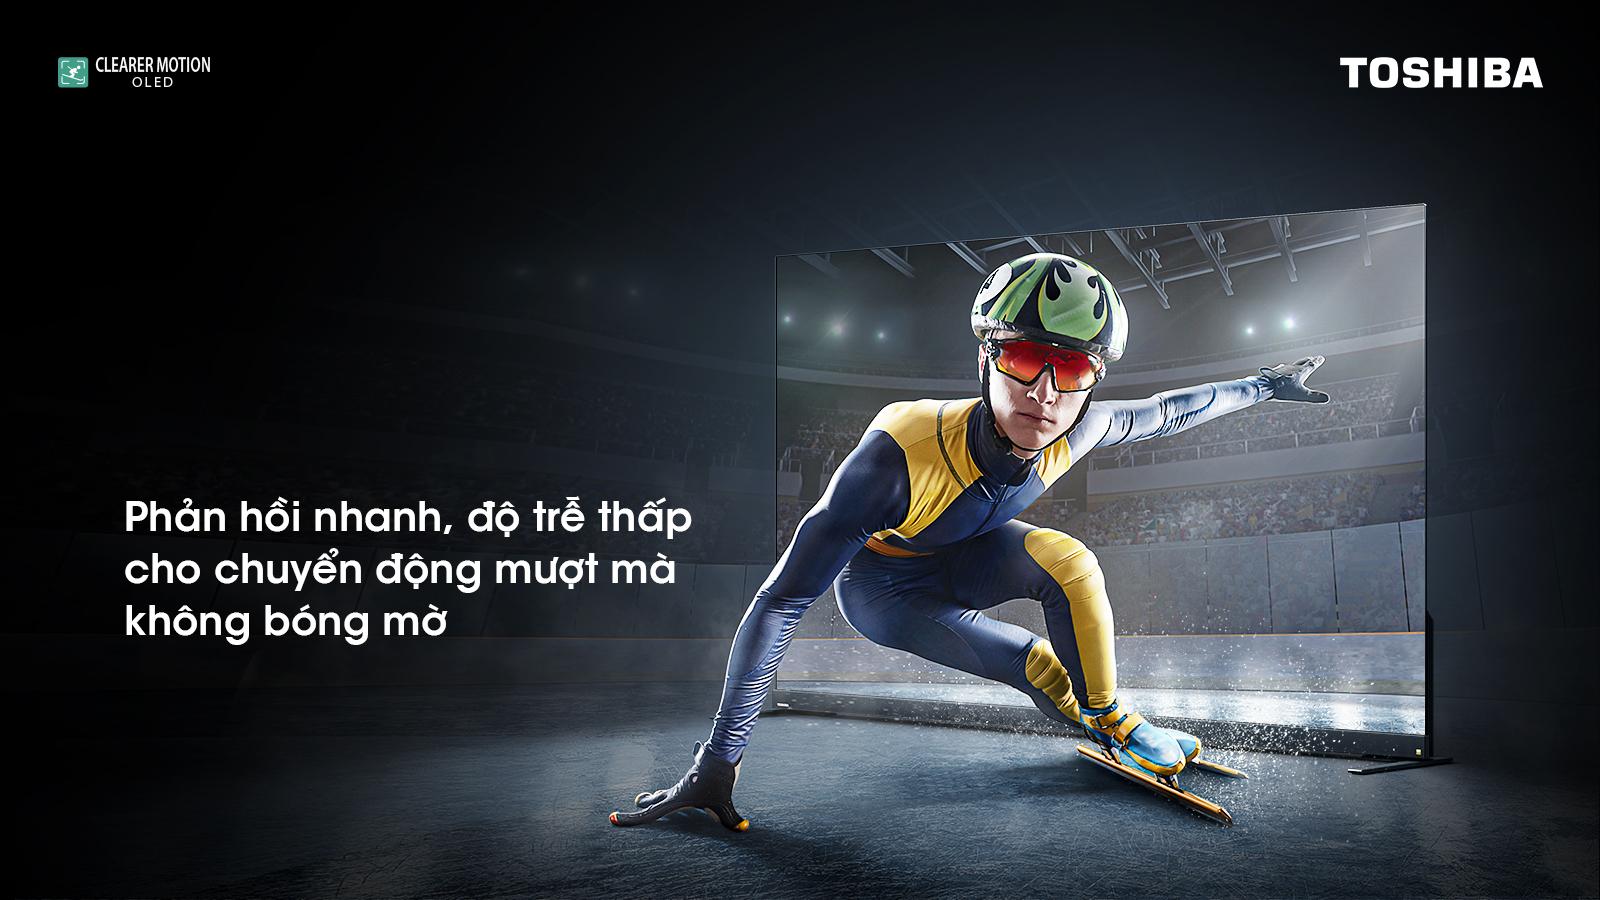 Toshiba TV Việt Nam ra mắt siêu phẩm Tivi thế hệ mới trước thềm FIFA World Cup Qatar 2022™ - Ảnh 1.